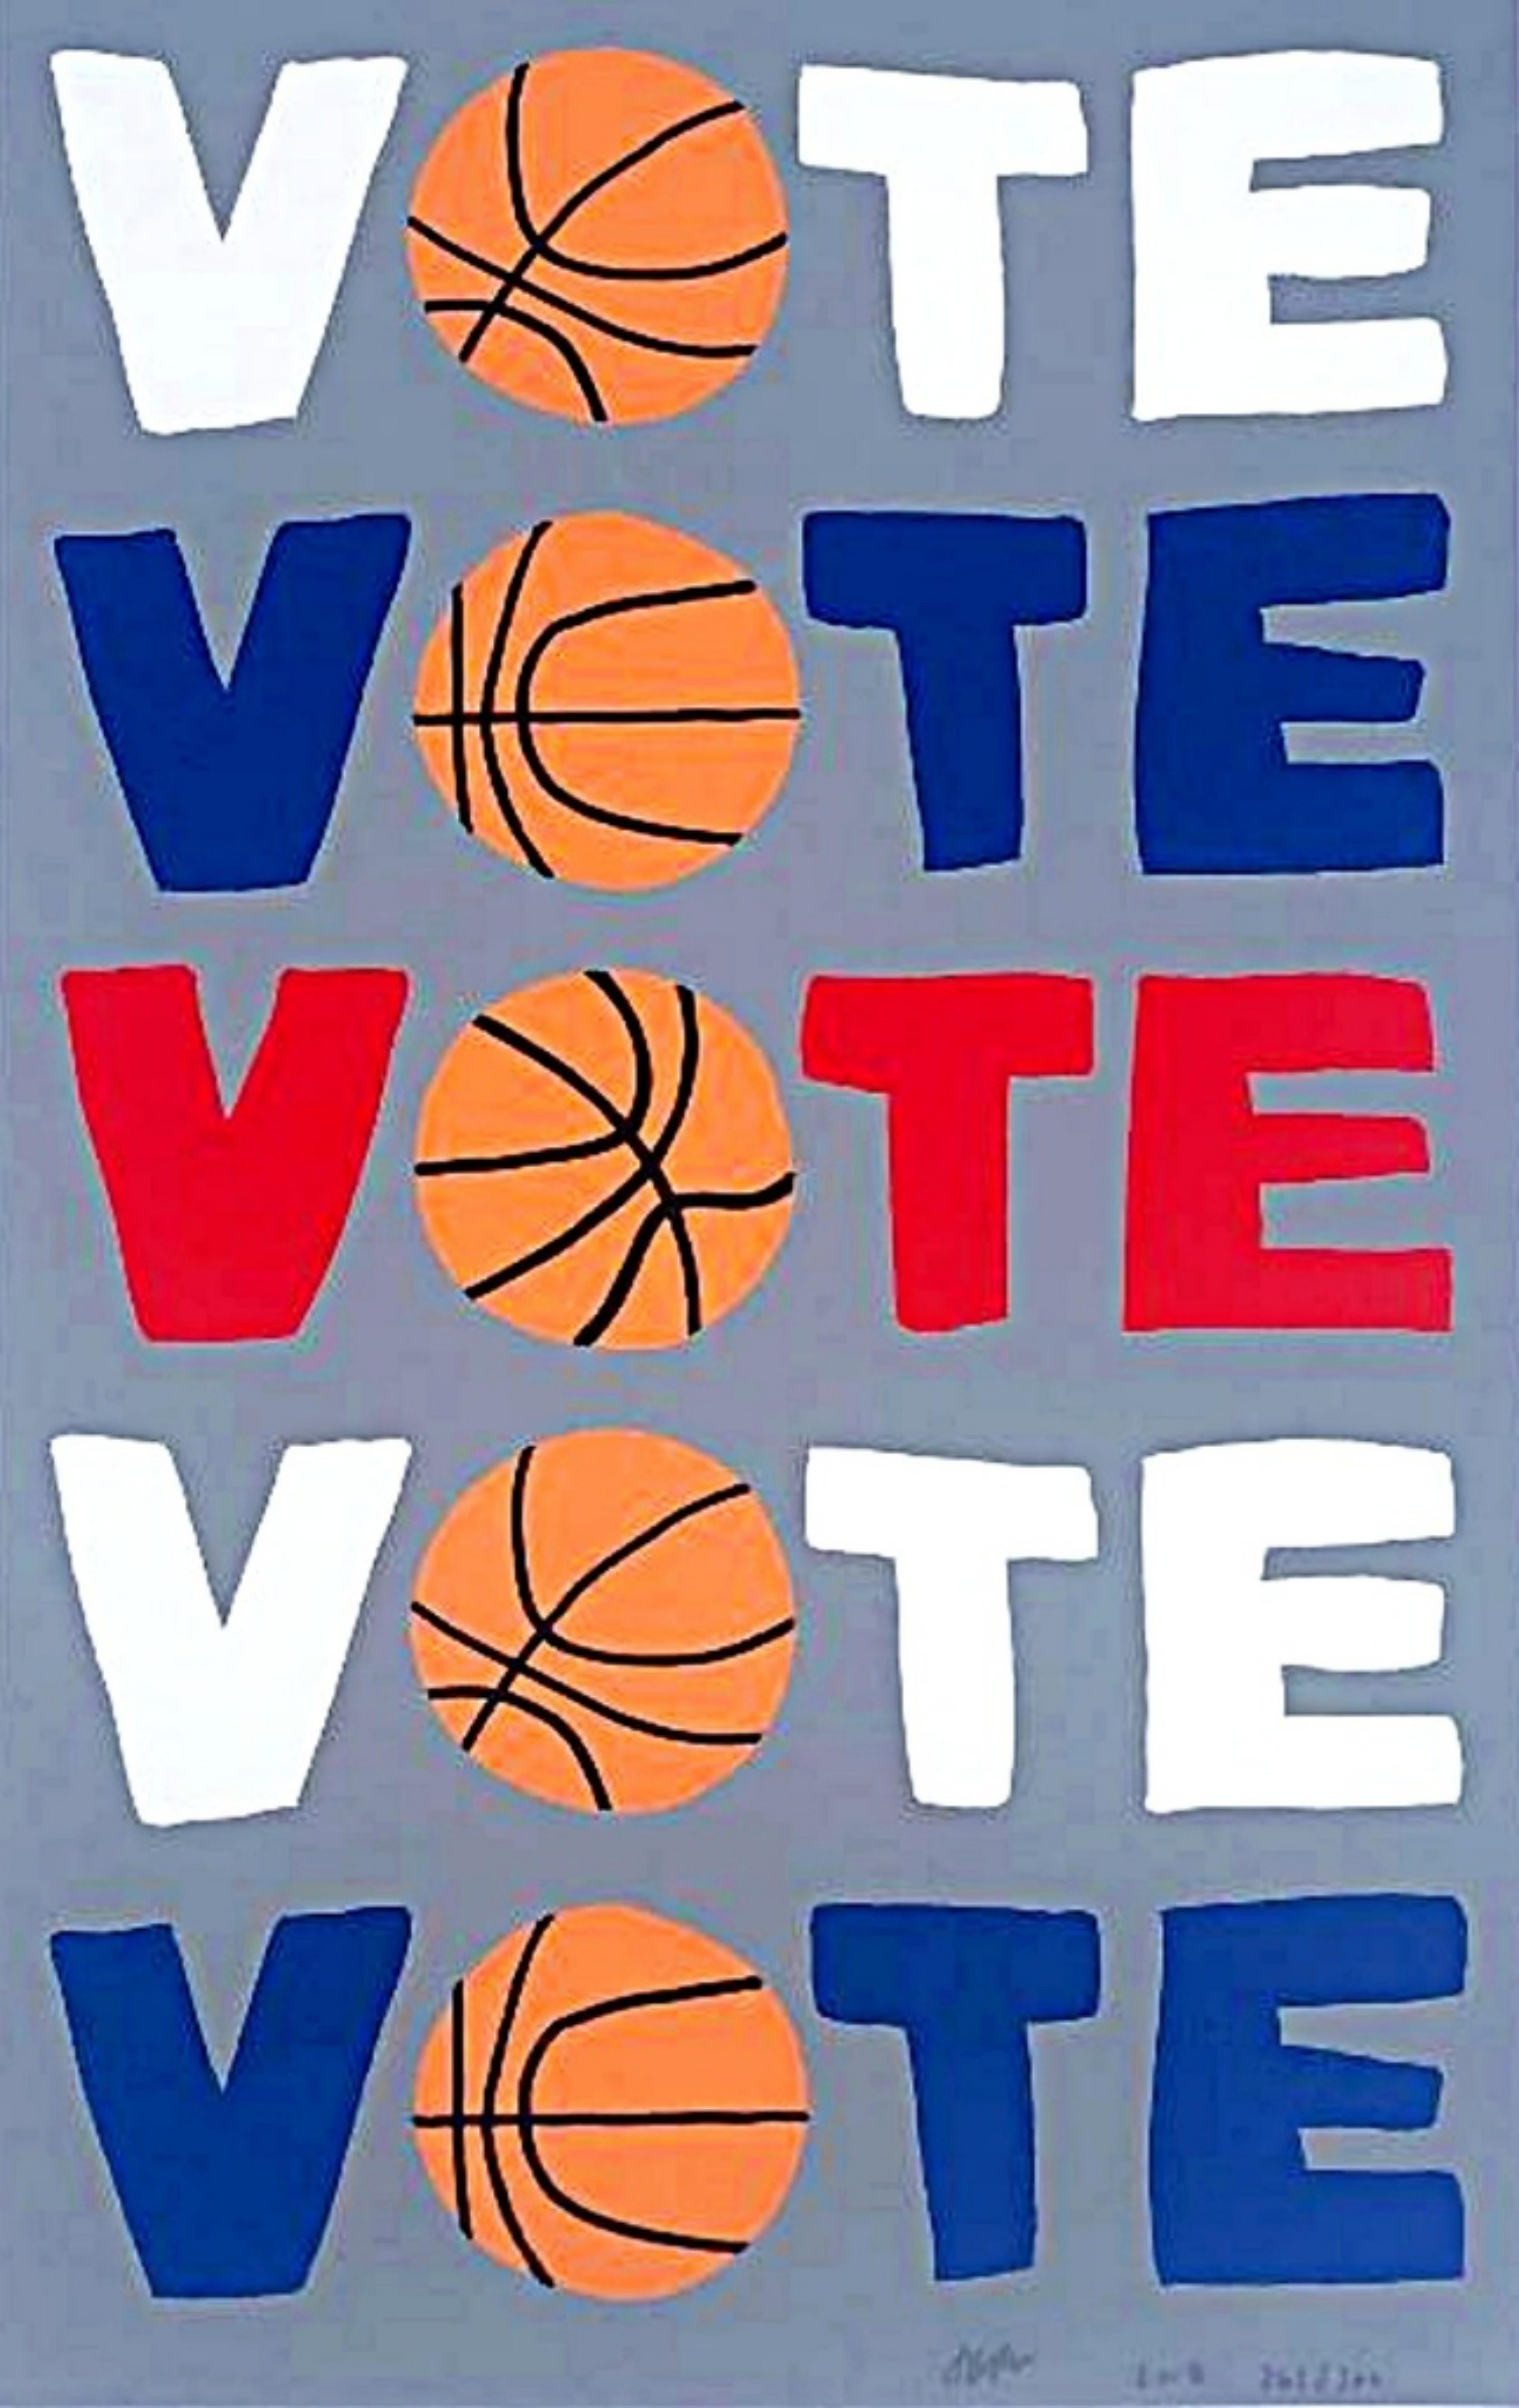 VOTE, limitierte Auflage politischer Siebdruck mit dem berühmten Basketball-Bild des Künstlers